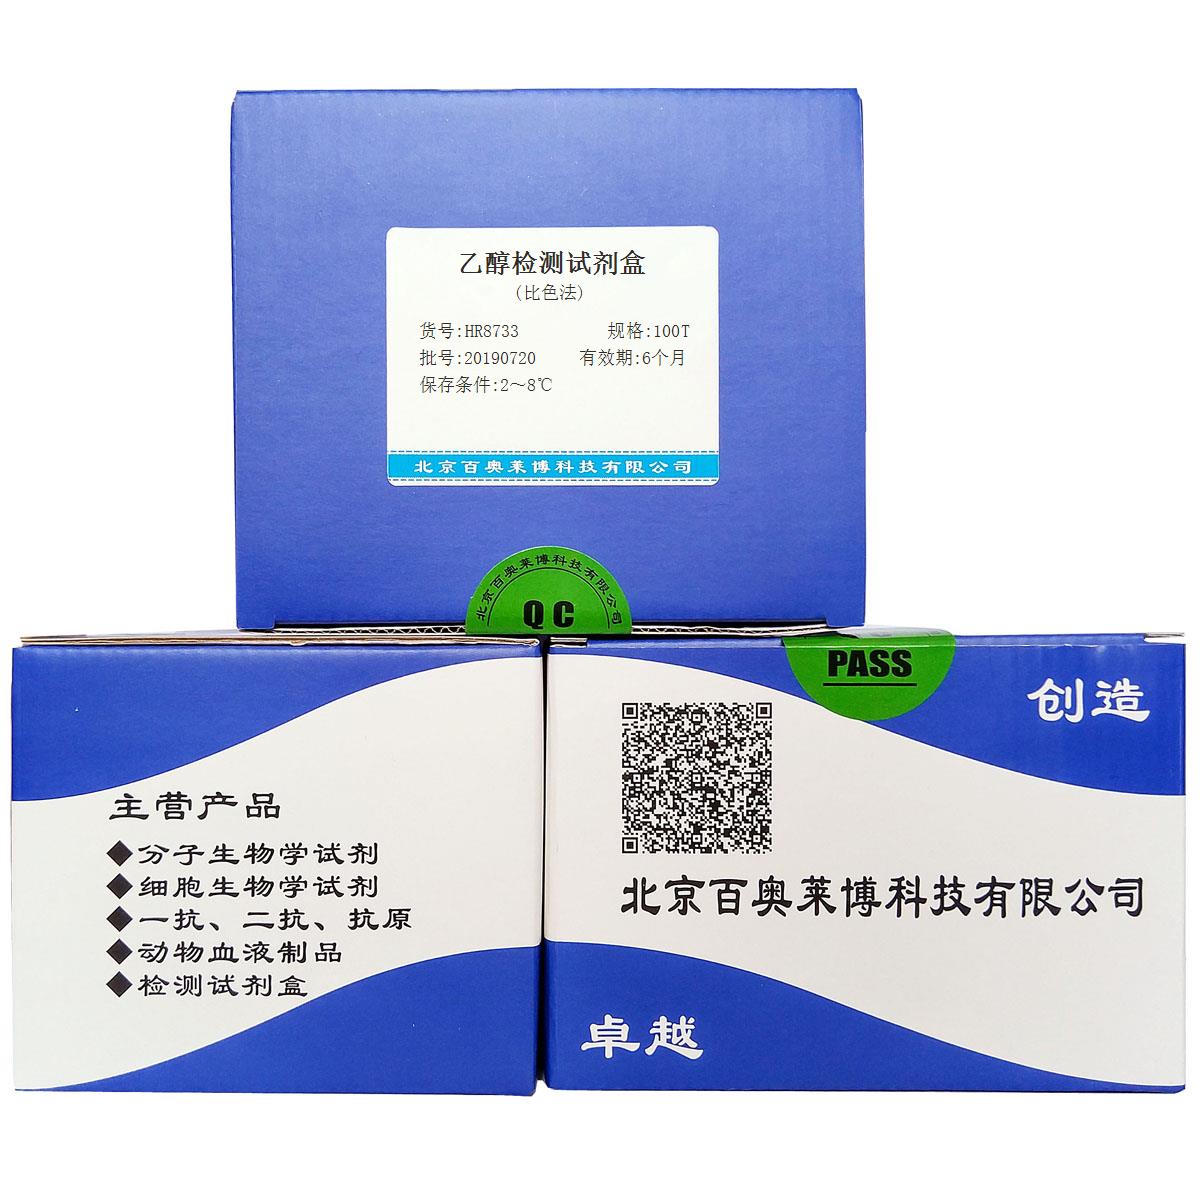 乙醇检测试剂盒(比色法)优惠促销